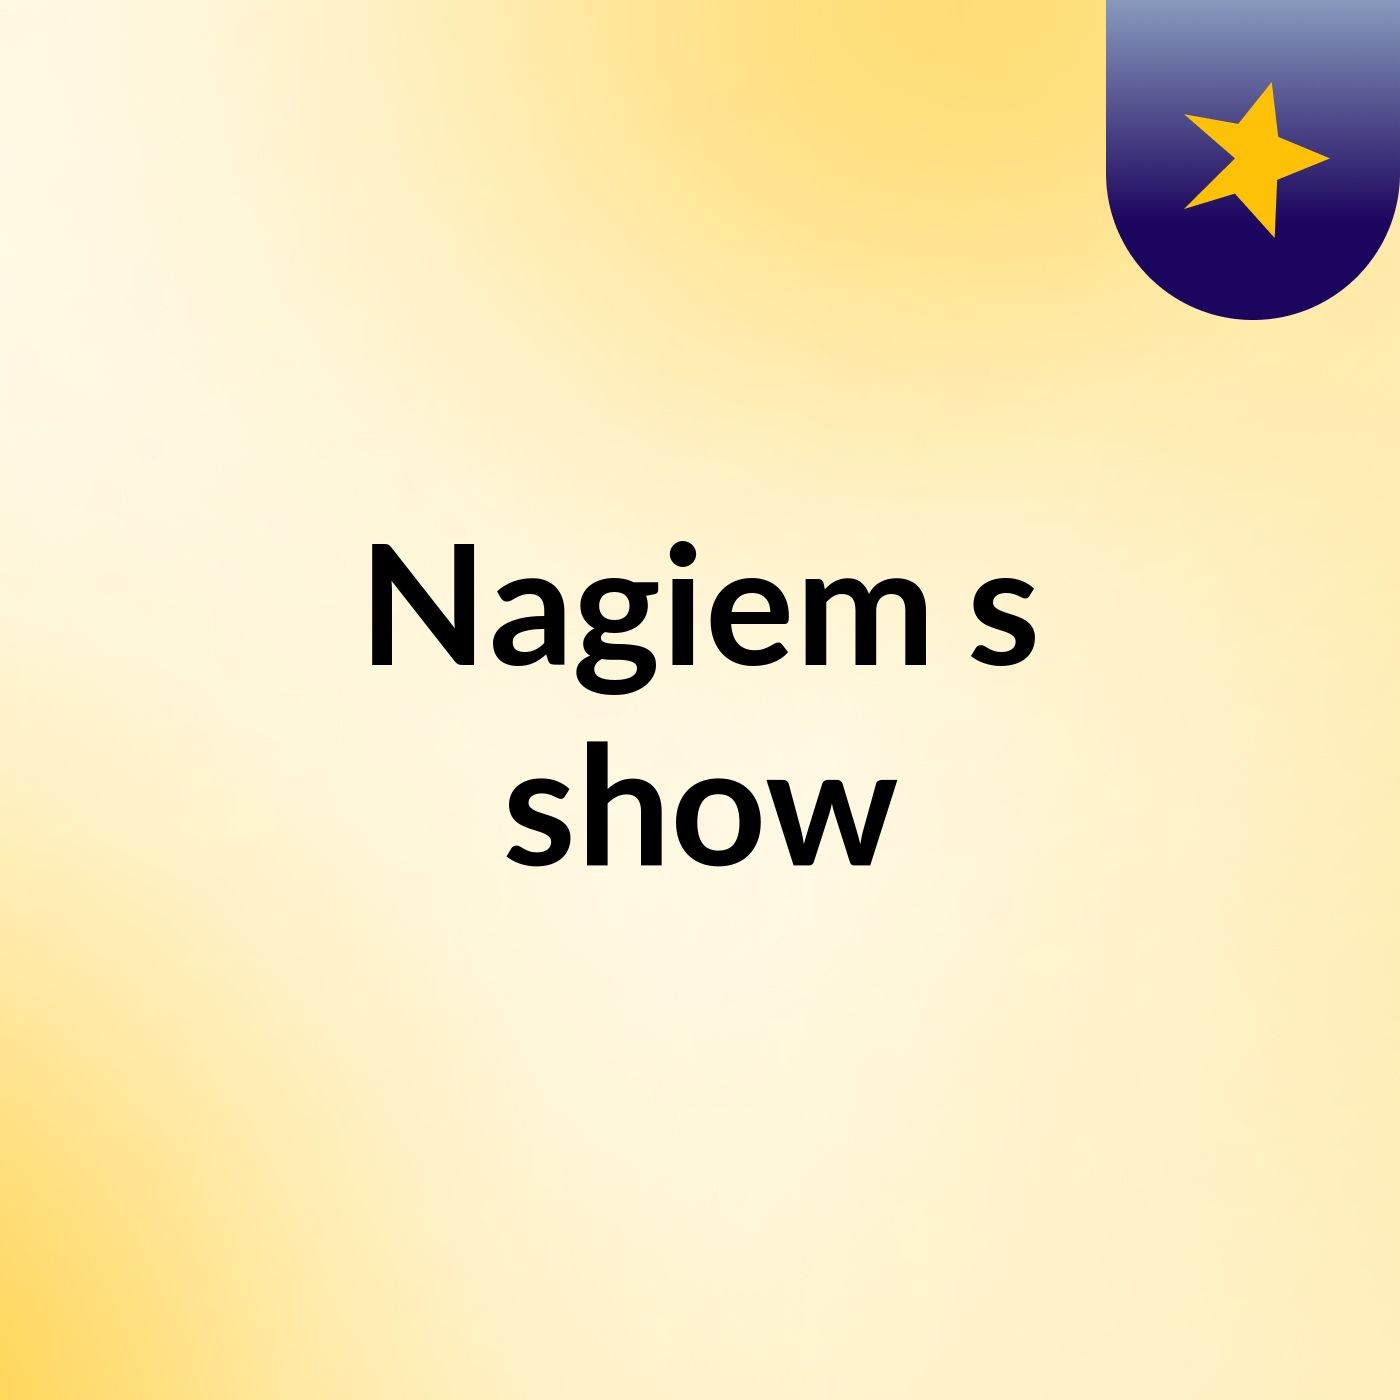 Nagiem's show